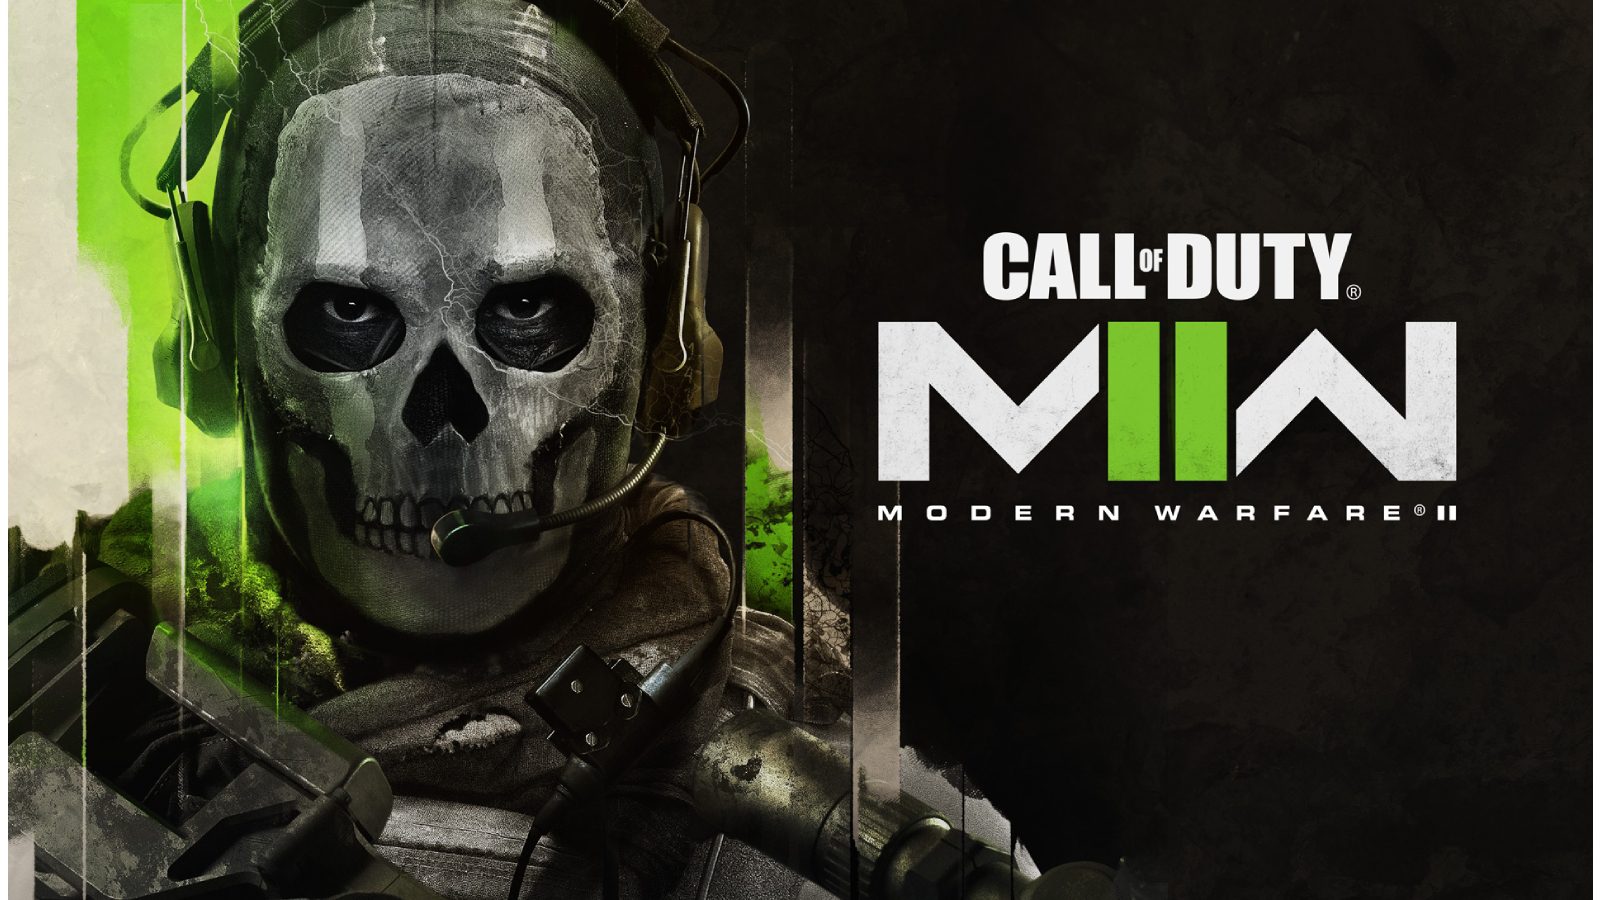 Утечки утверждают, что Call of Duty MW2 получит премиум-DLC, включая расширение кампании, в 2023 году.